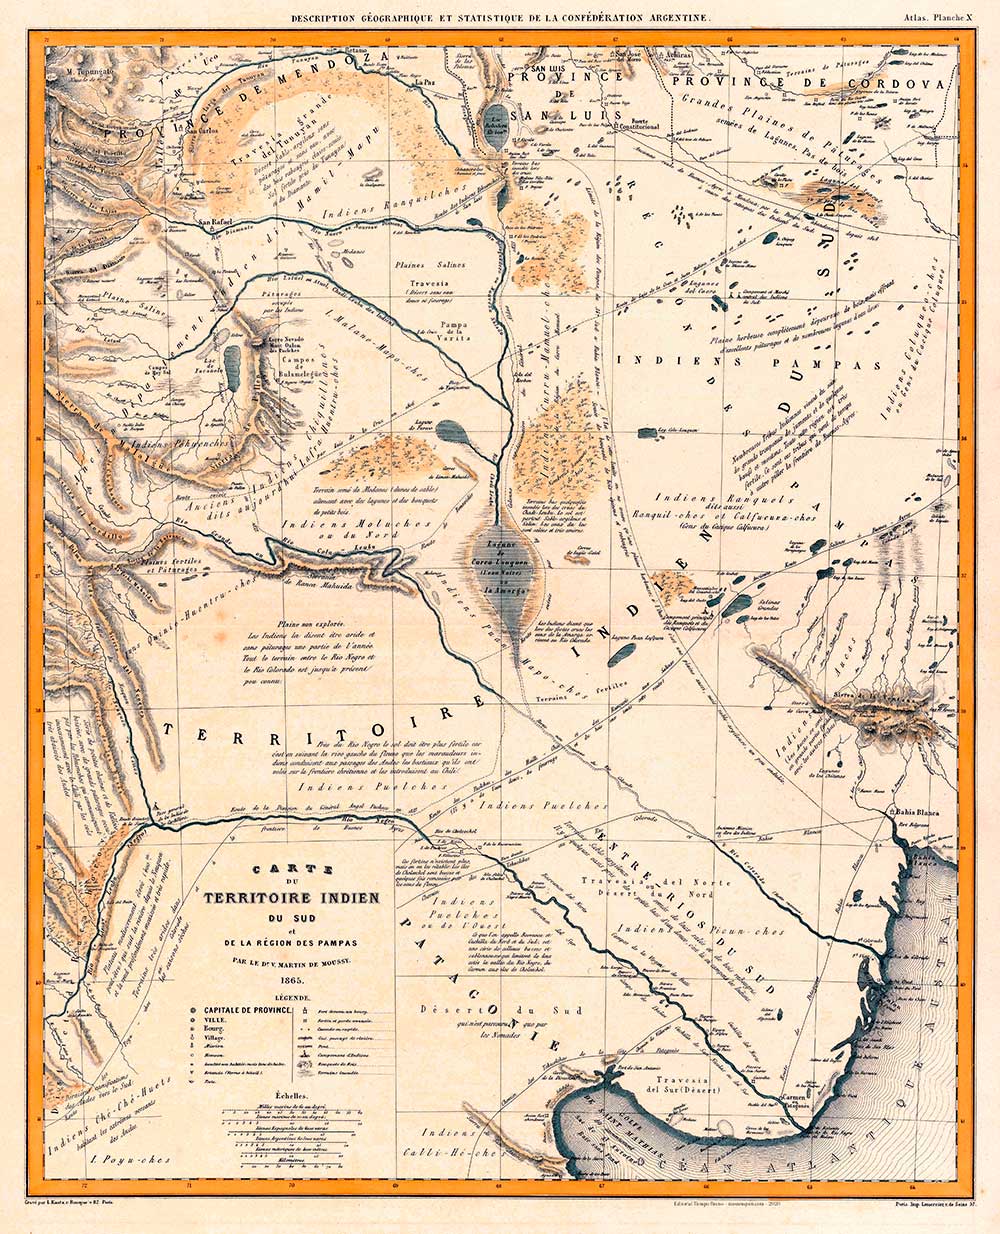 Mapa de la Norpatagonia y región pampeana – Víctor Martín De Moussy – 1873